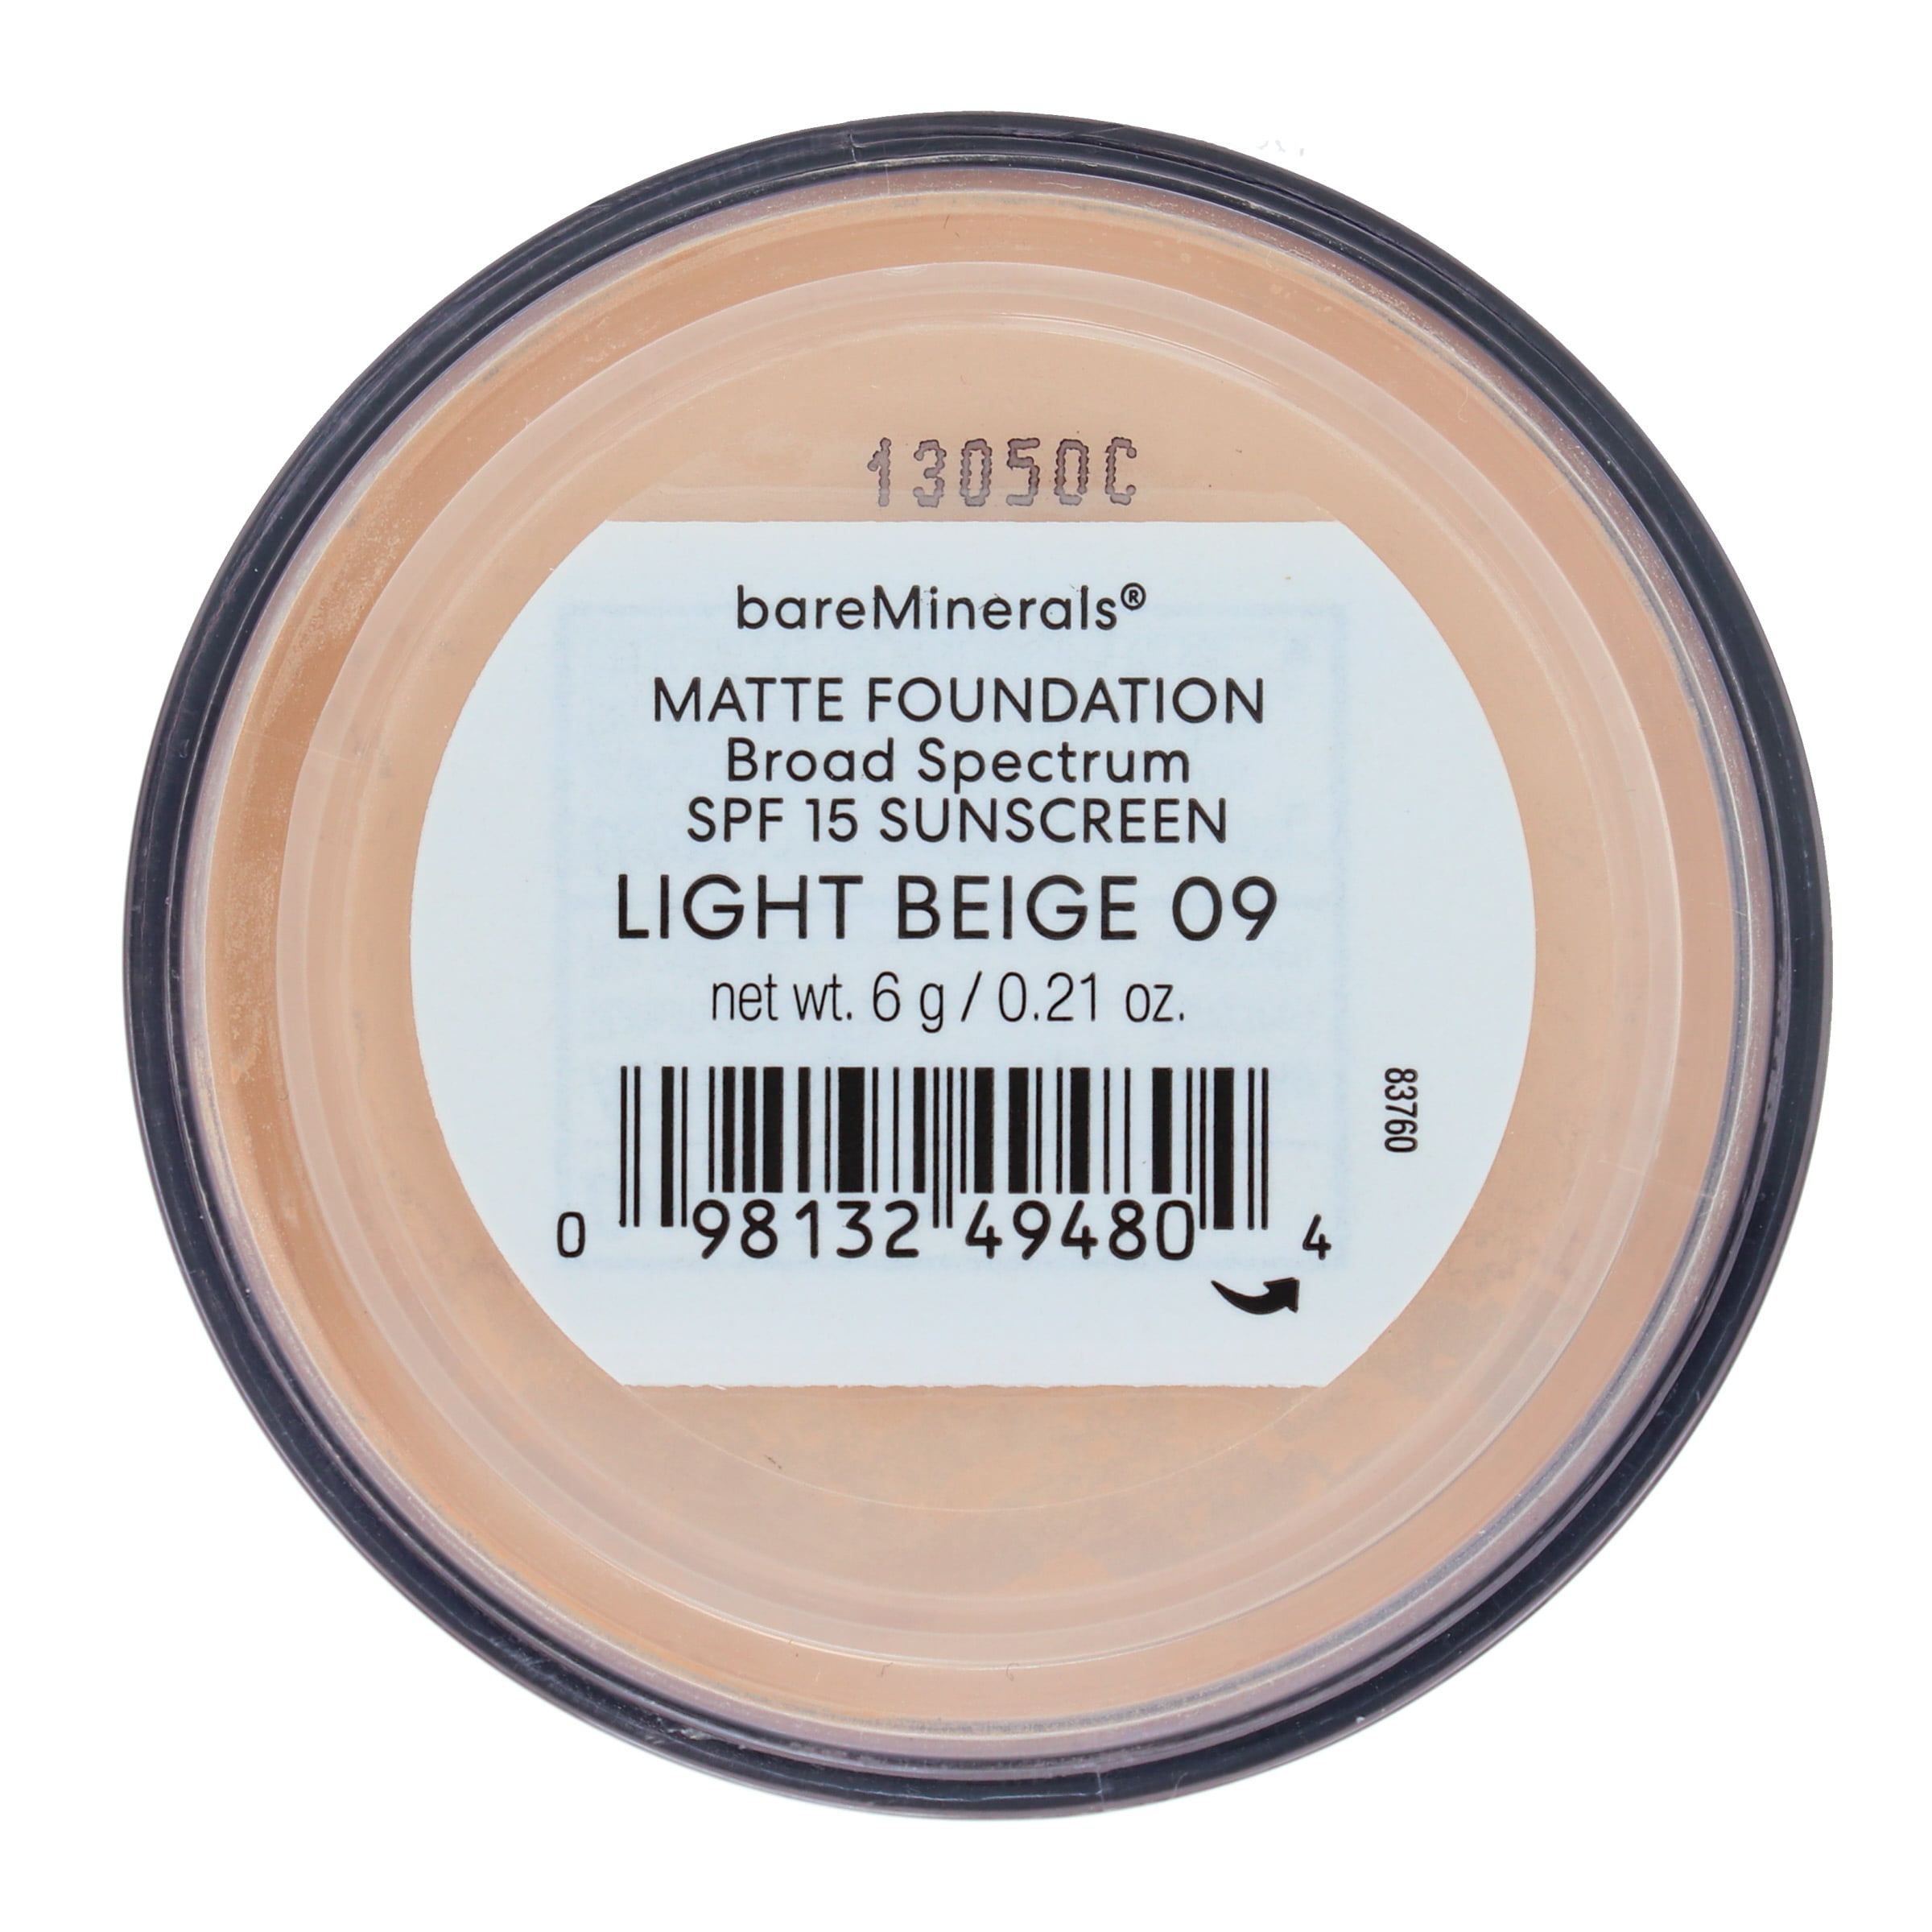 09 Spectrum Foundation Beige 0.21 oz Broad Light Matte SPF 15 bareMinerals